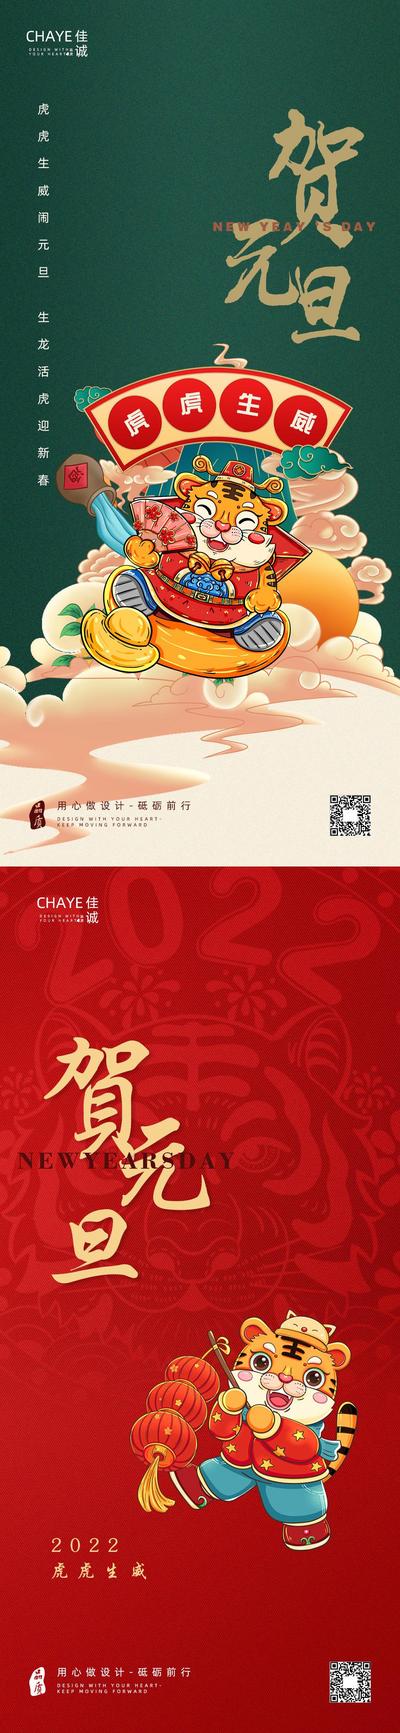 南门网 海报 公历节日  元旦 虎年 插画 系列